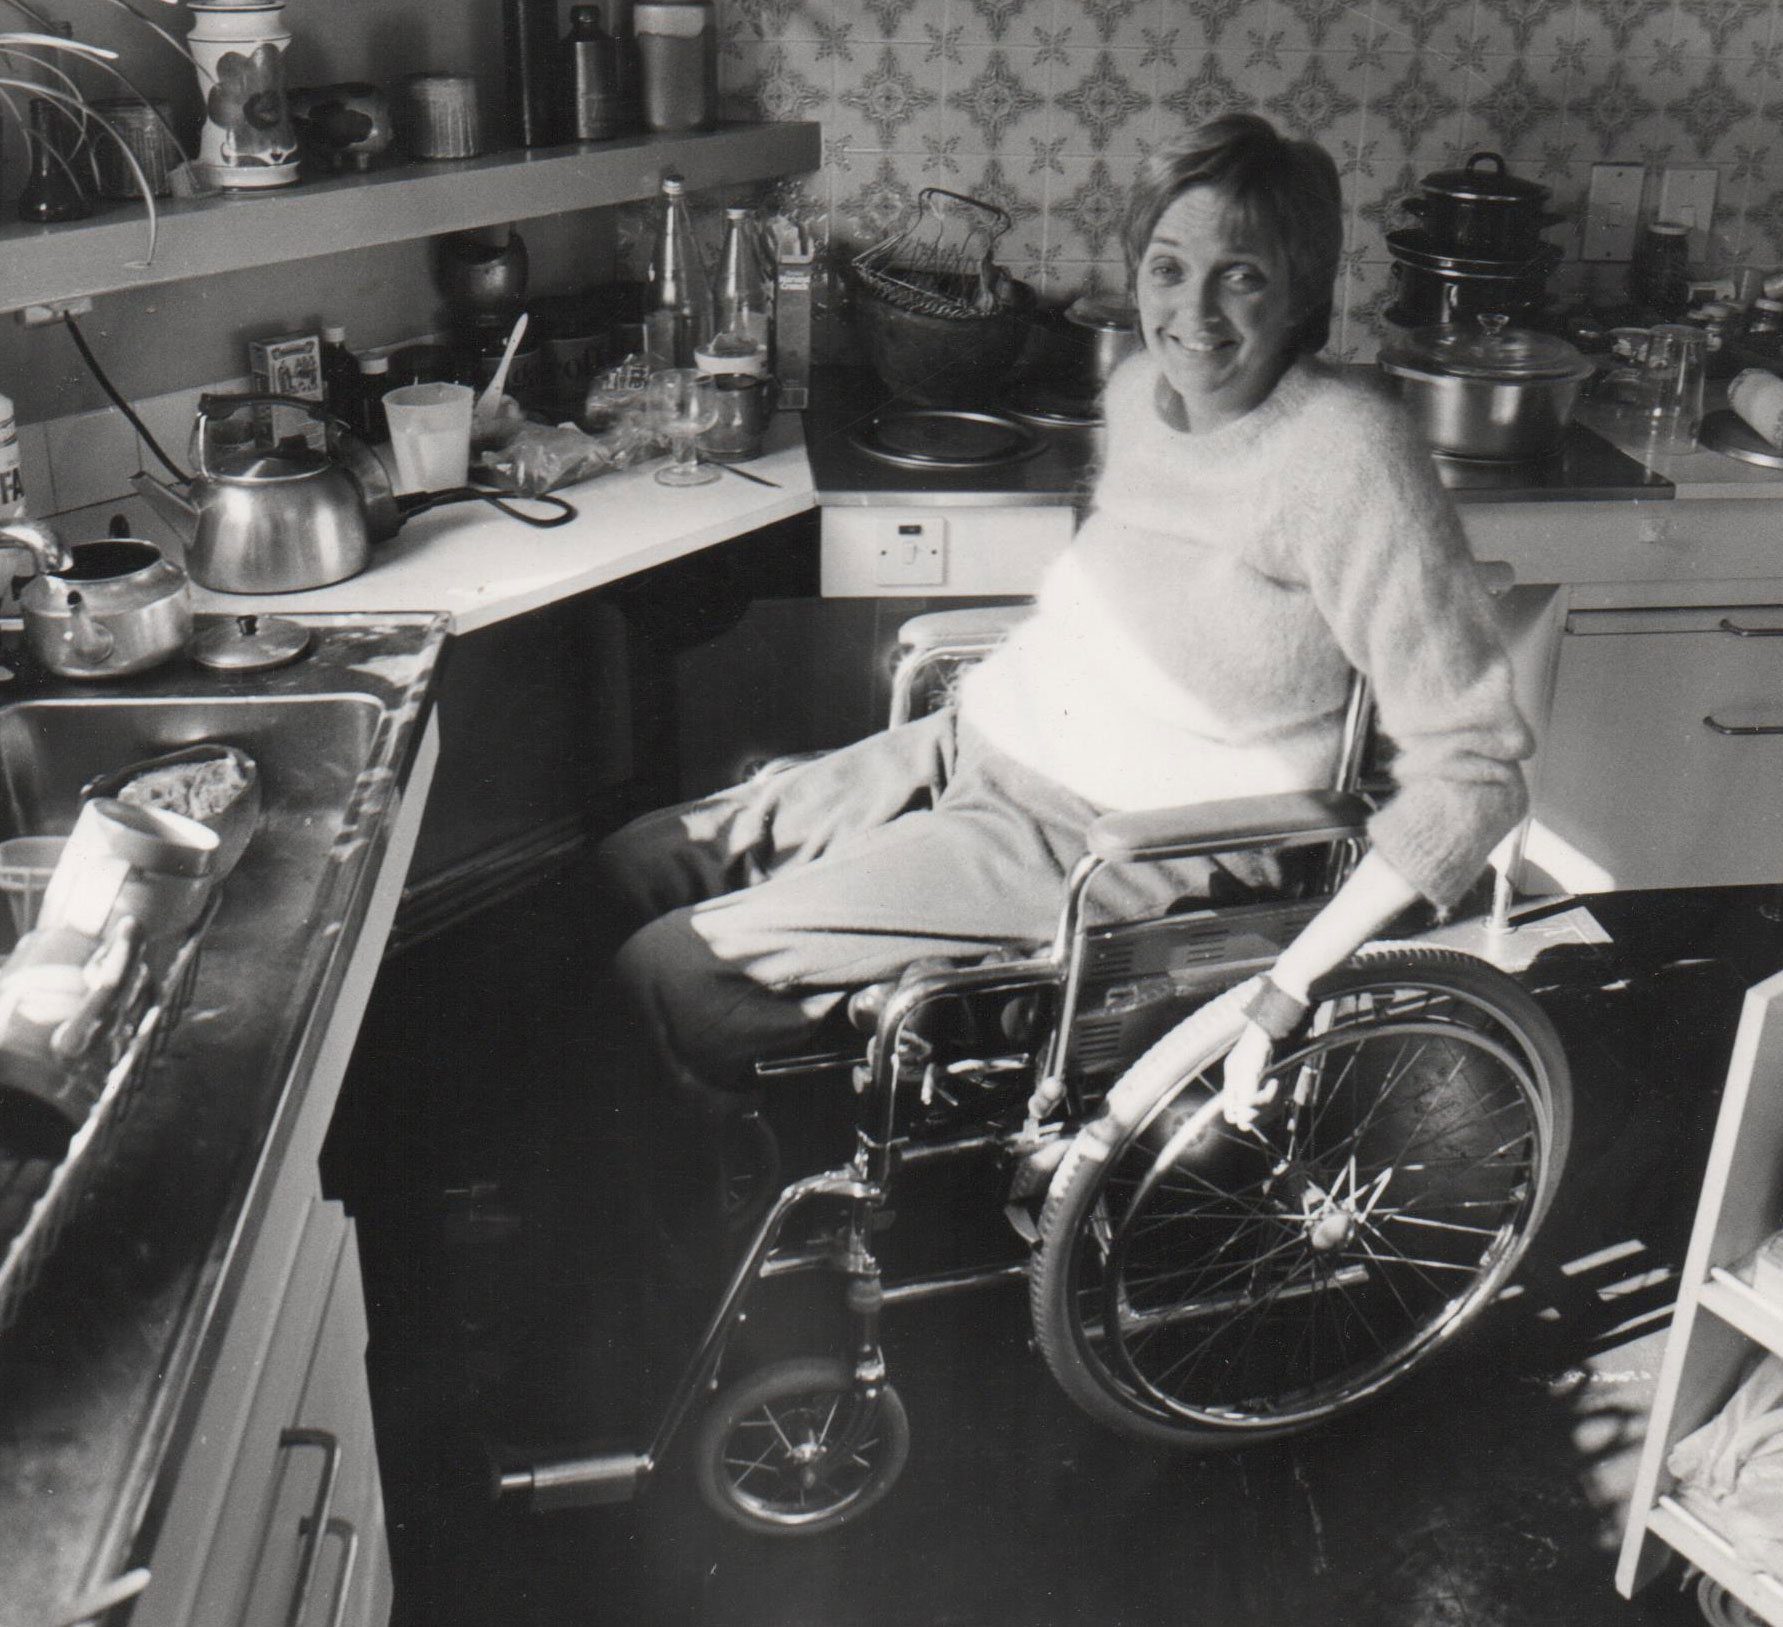 Woman in wheelchair in 70s kitchen